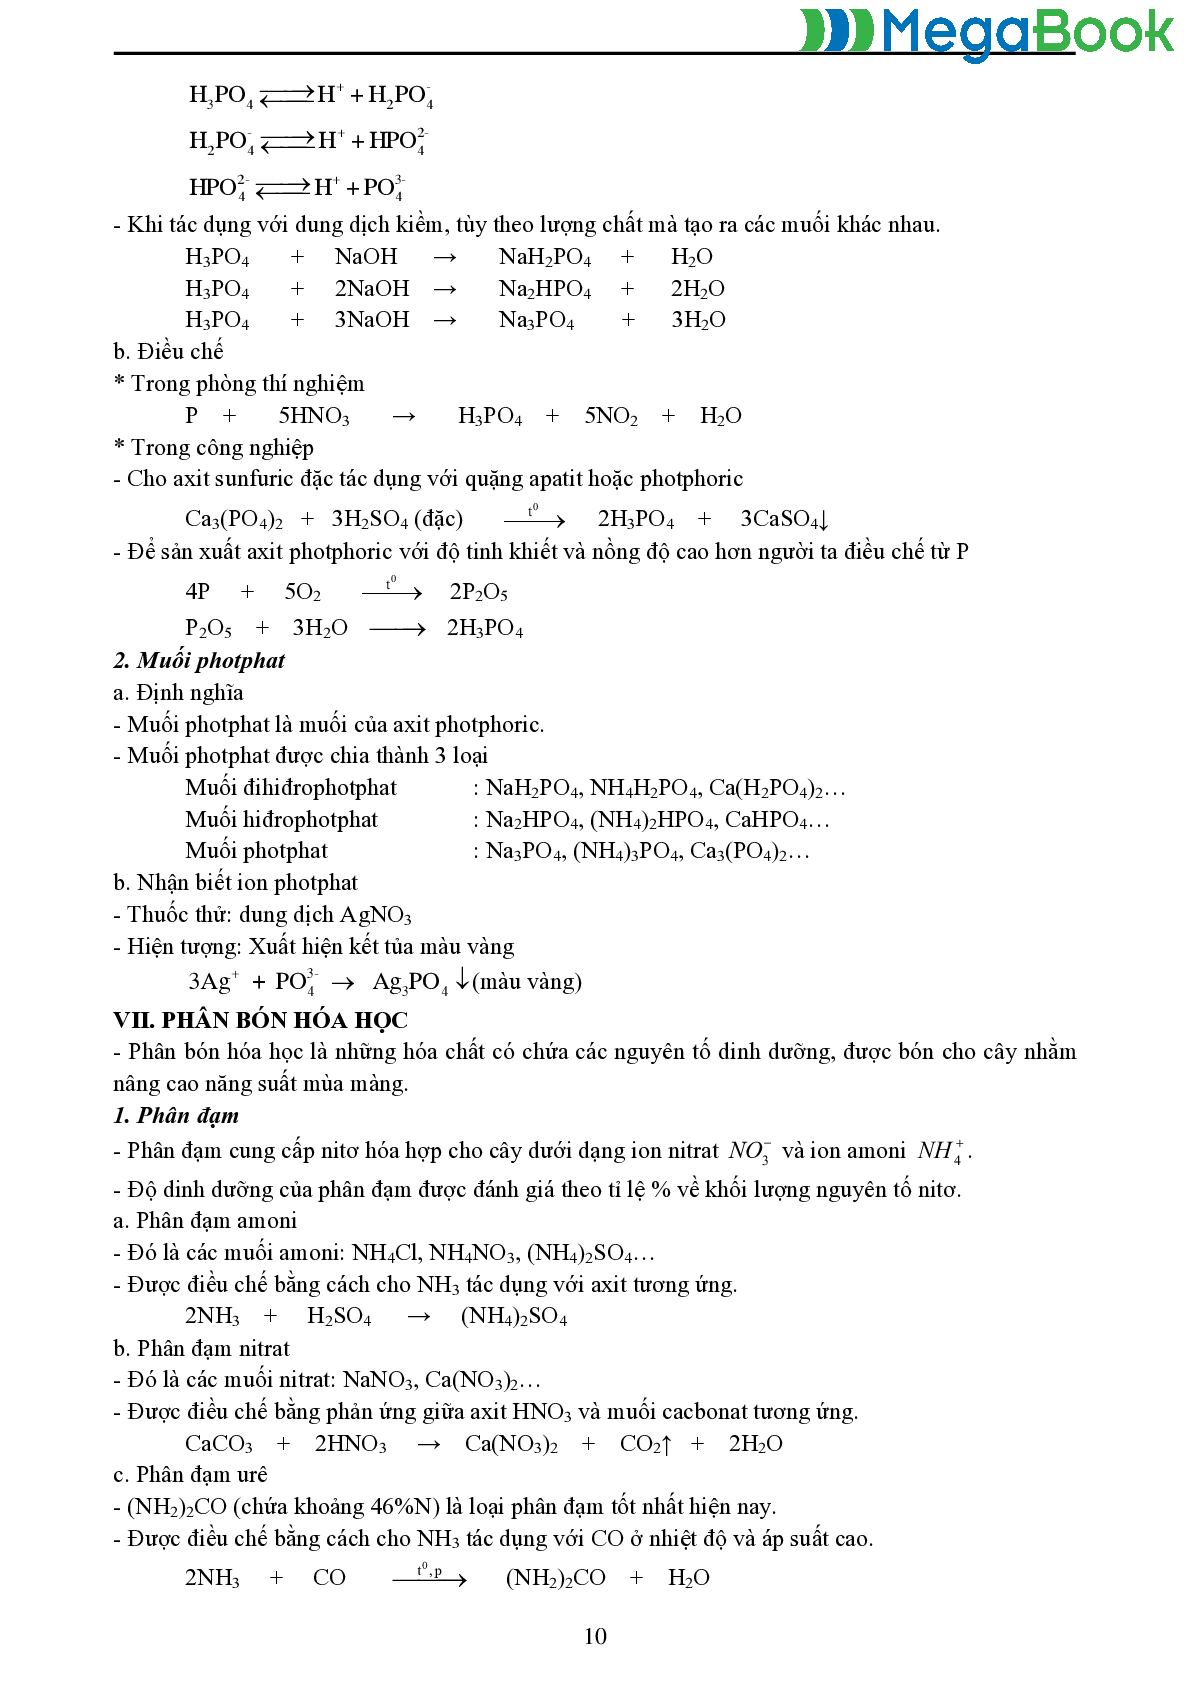 Các chuyên đề môn Hóa lớp 11 đầy đủ nhất (trang 10)